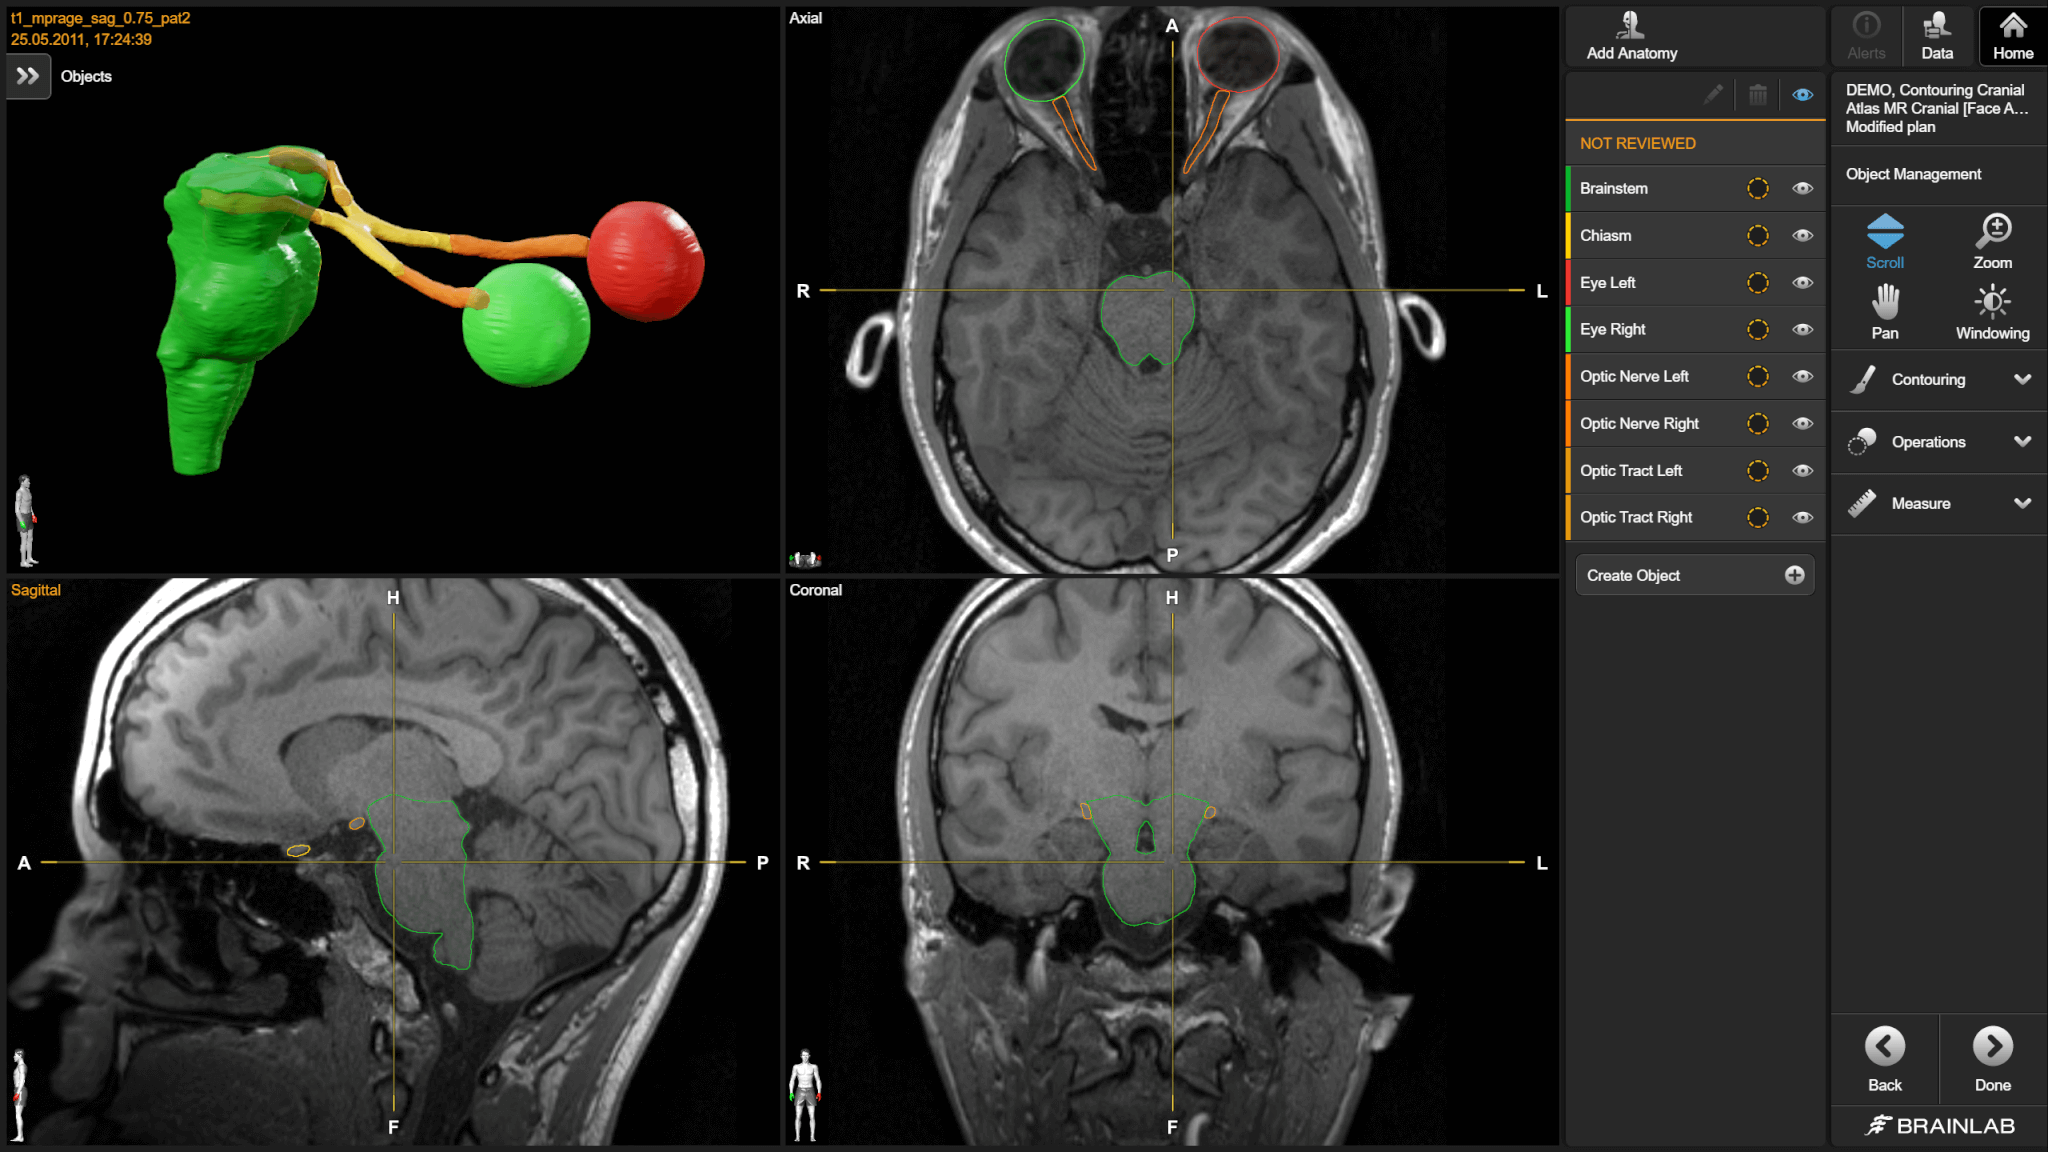 Anatomical Mapping 软件界面，用于分割脑部的不同结构以进行放疗计划。